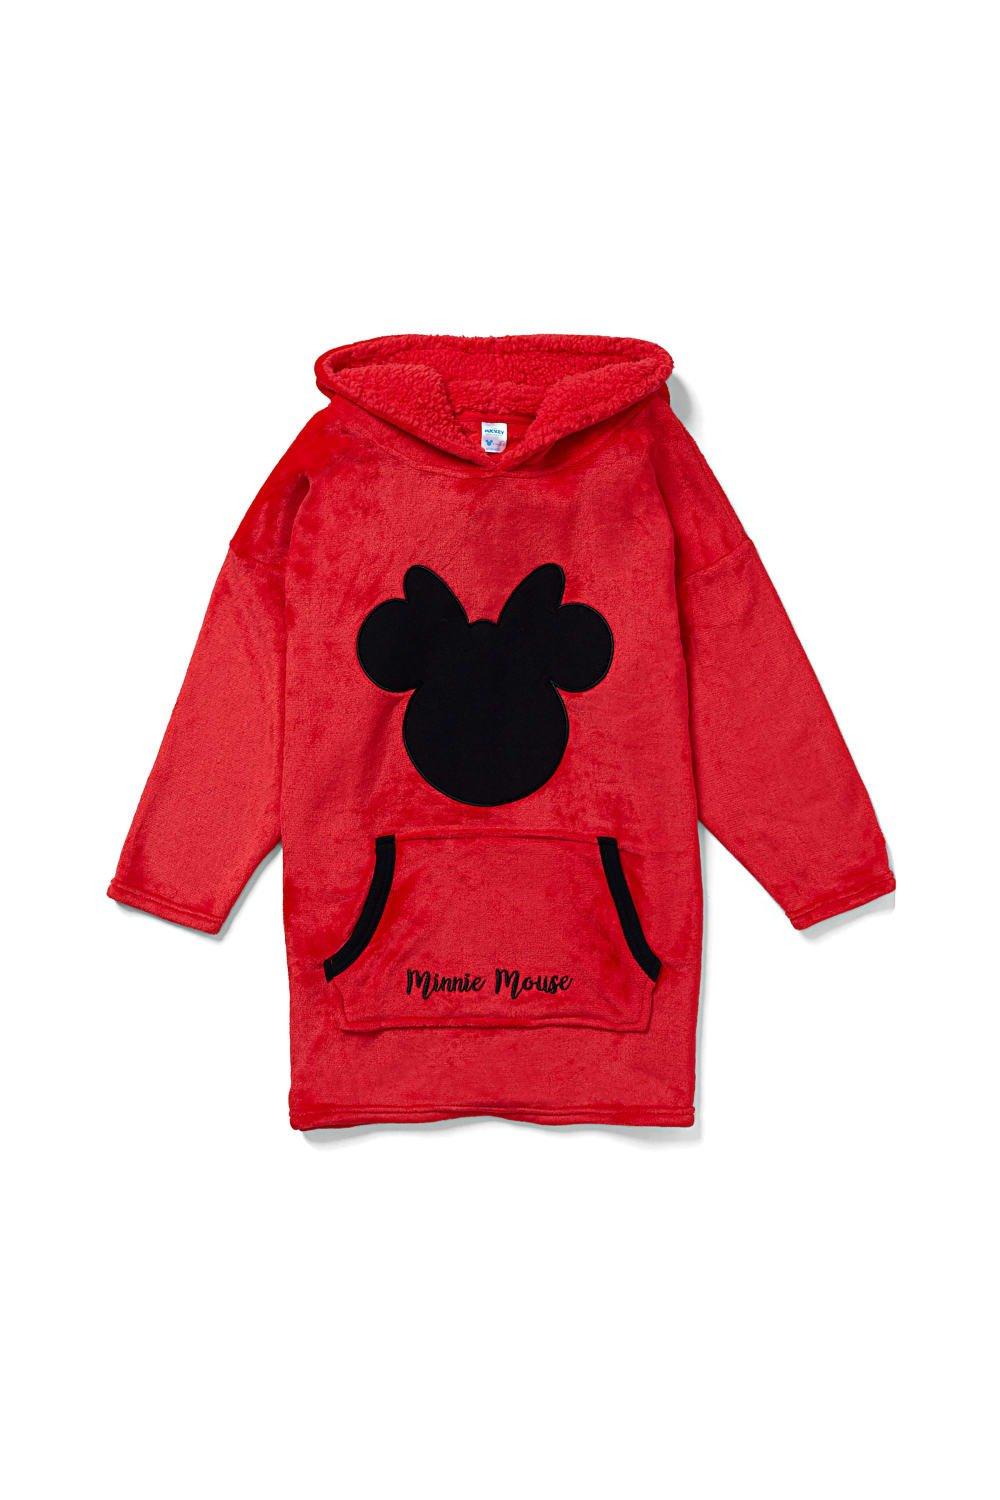 Объемное флисовое одеяло с капюшоном и Минни Маус, одежда для дома Disney, красный мягкая игрушка минни маус 50 см